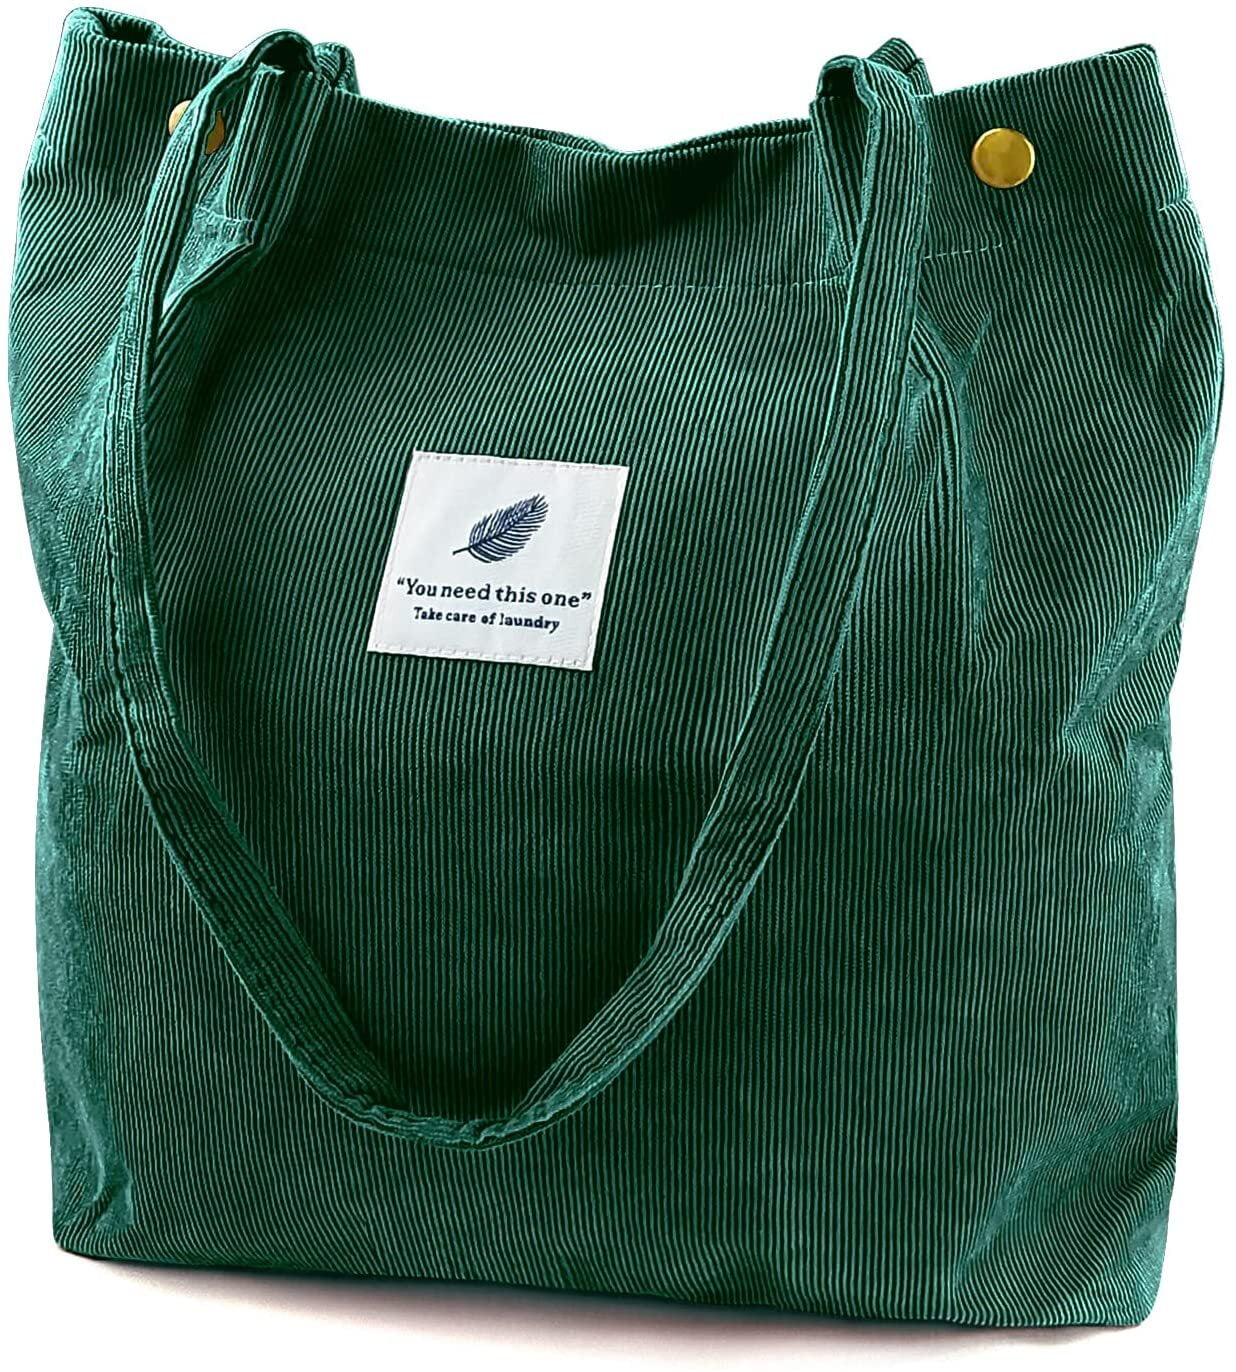 Green Handbags | Sage & Emerald Green Handbags | Monsoon Global